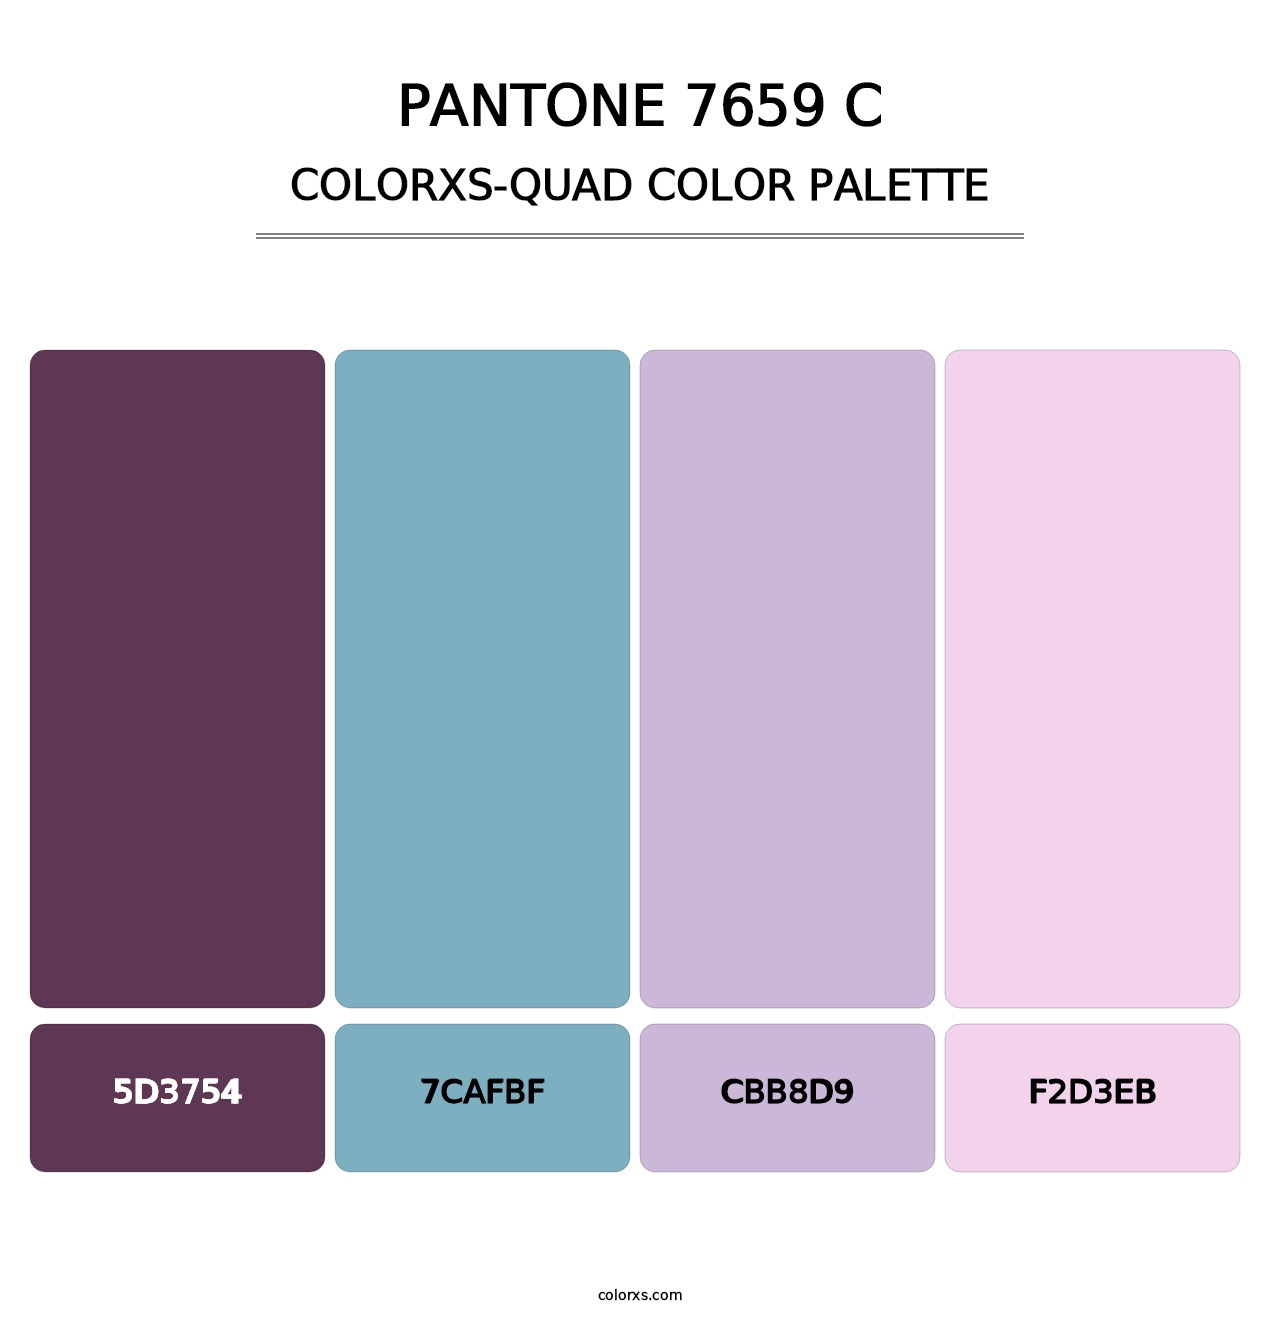 PANTONE 7659 C - Colorxs Quad Palette